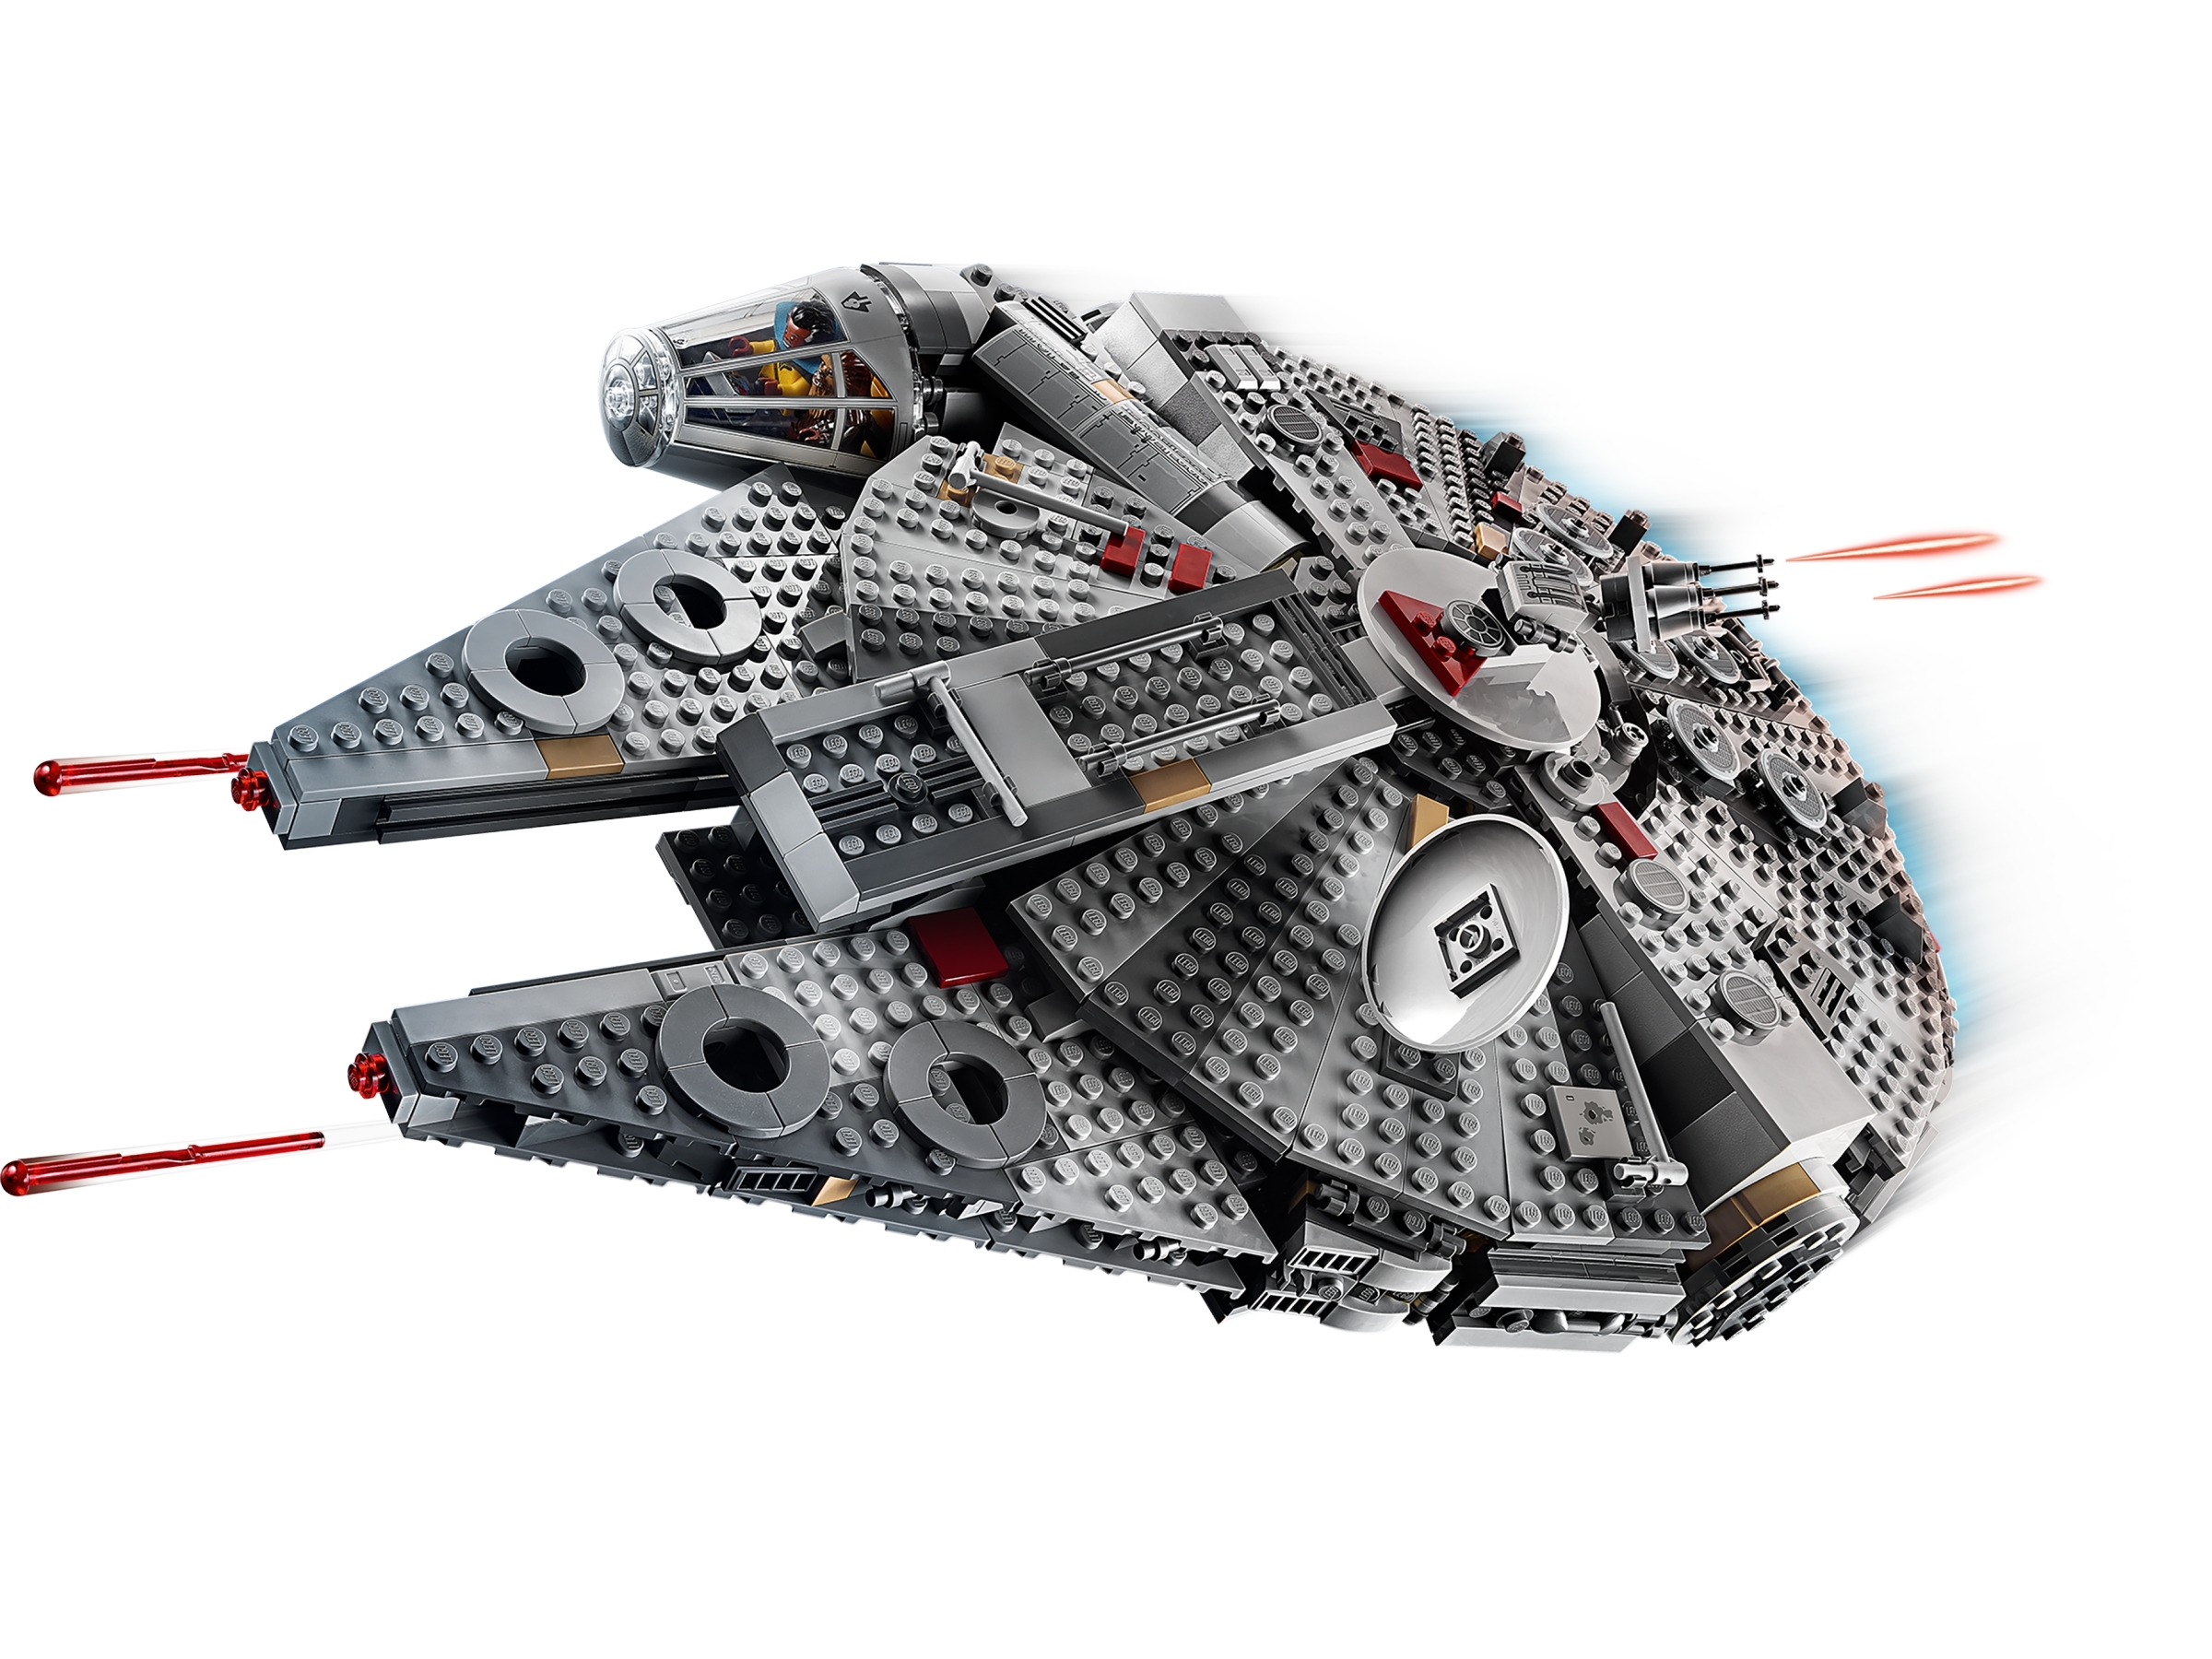 LEGO Star Wars episodio IX 75257 Millennium Falcon NUOVO E OVP 